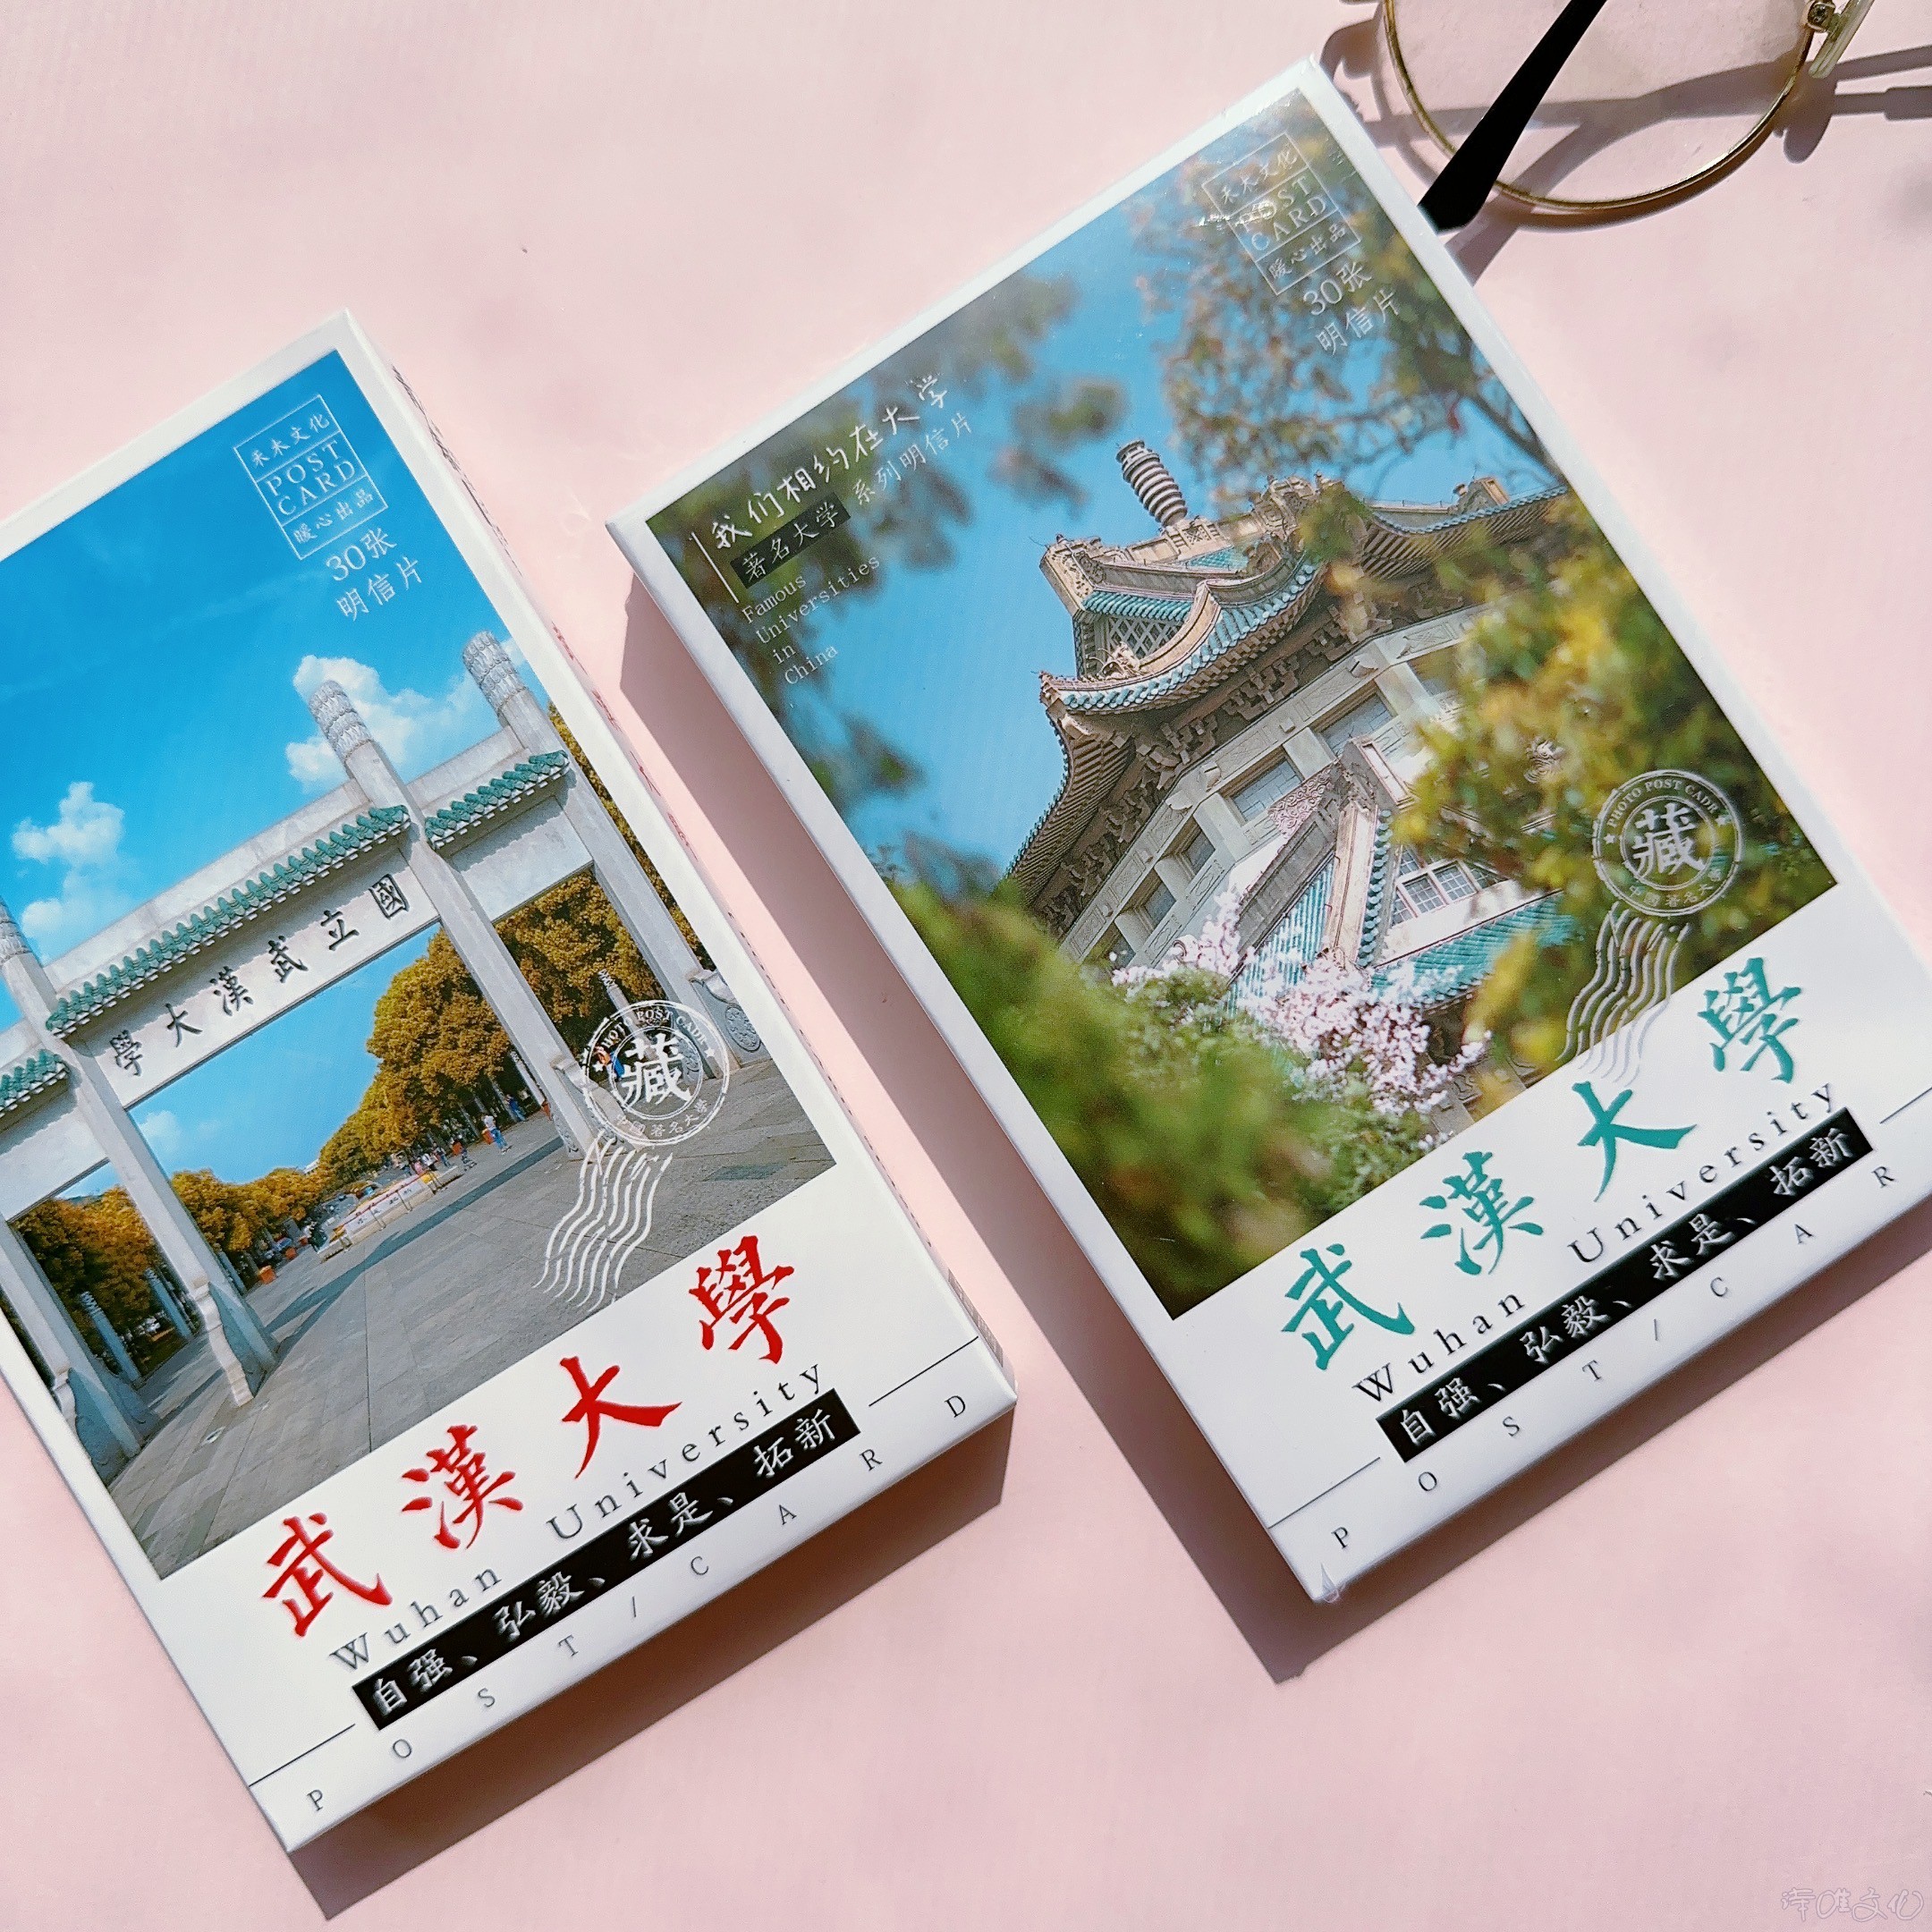 30张武汉大学印象明信片 青砖蓝瓦建筑美丽樱花 武大校园风光贺卡